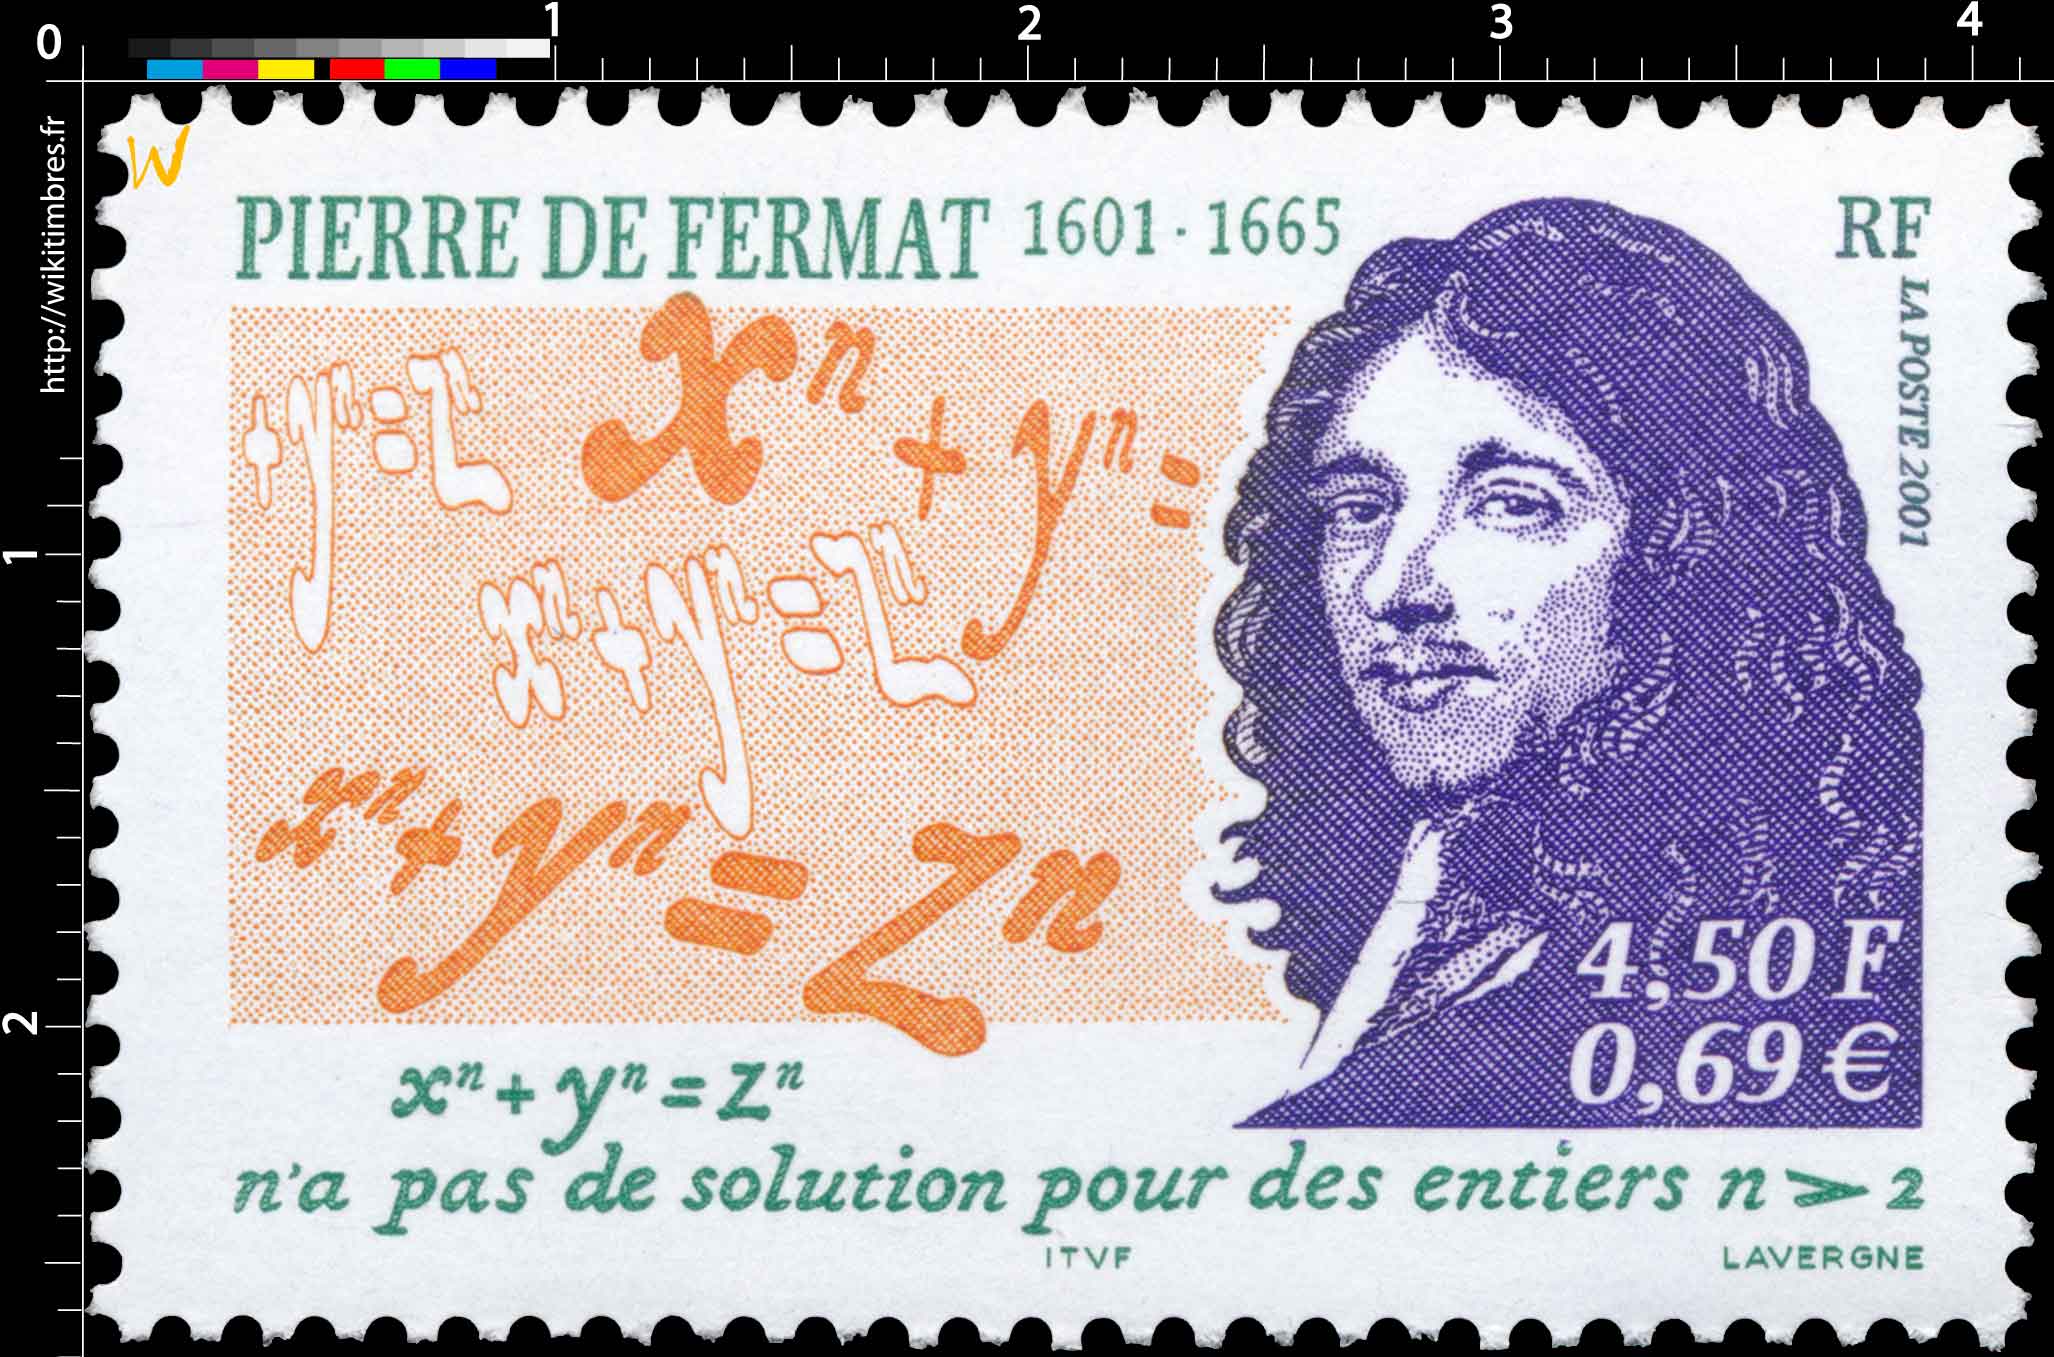 2001 PIERRE DE FERMAT 1601-1665 xn + yn = zn n’a pas de solution pour des nombres n > 2